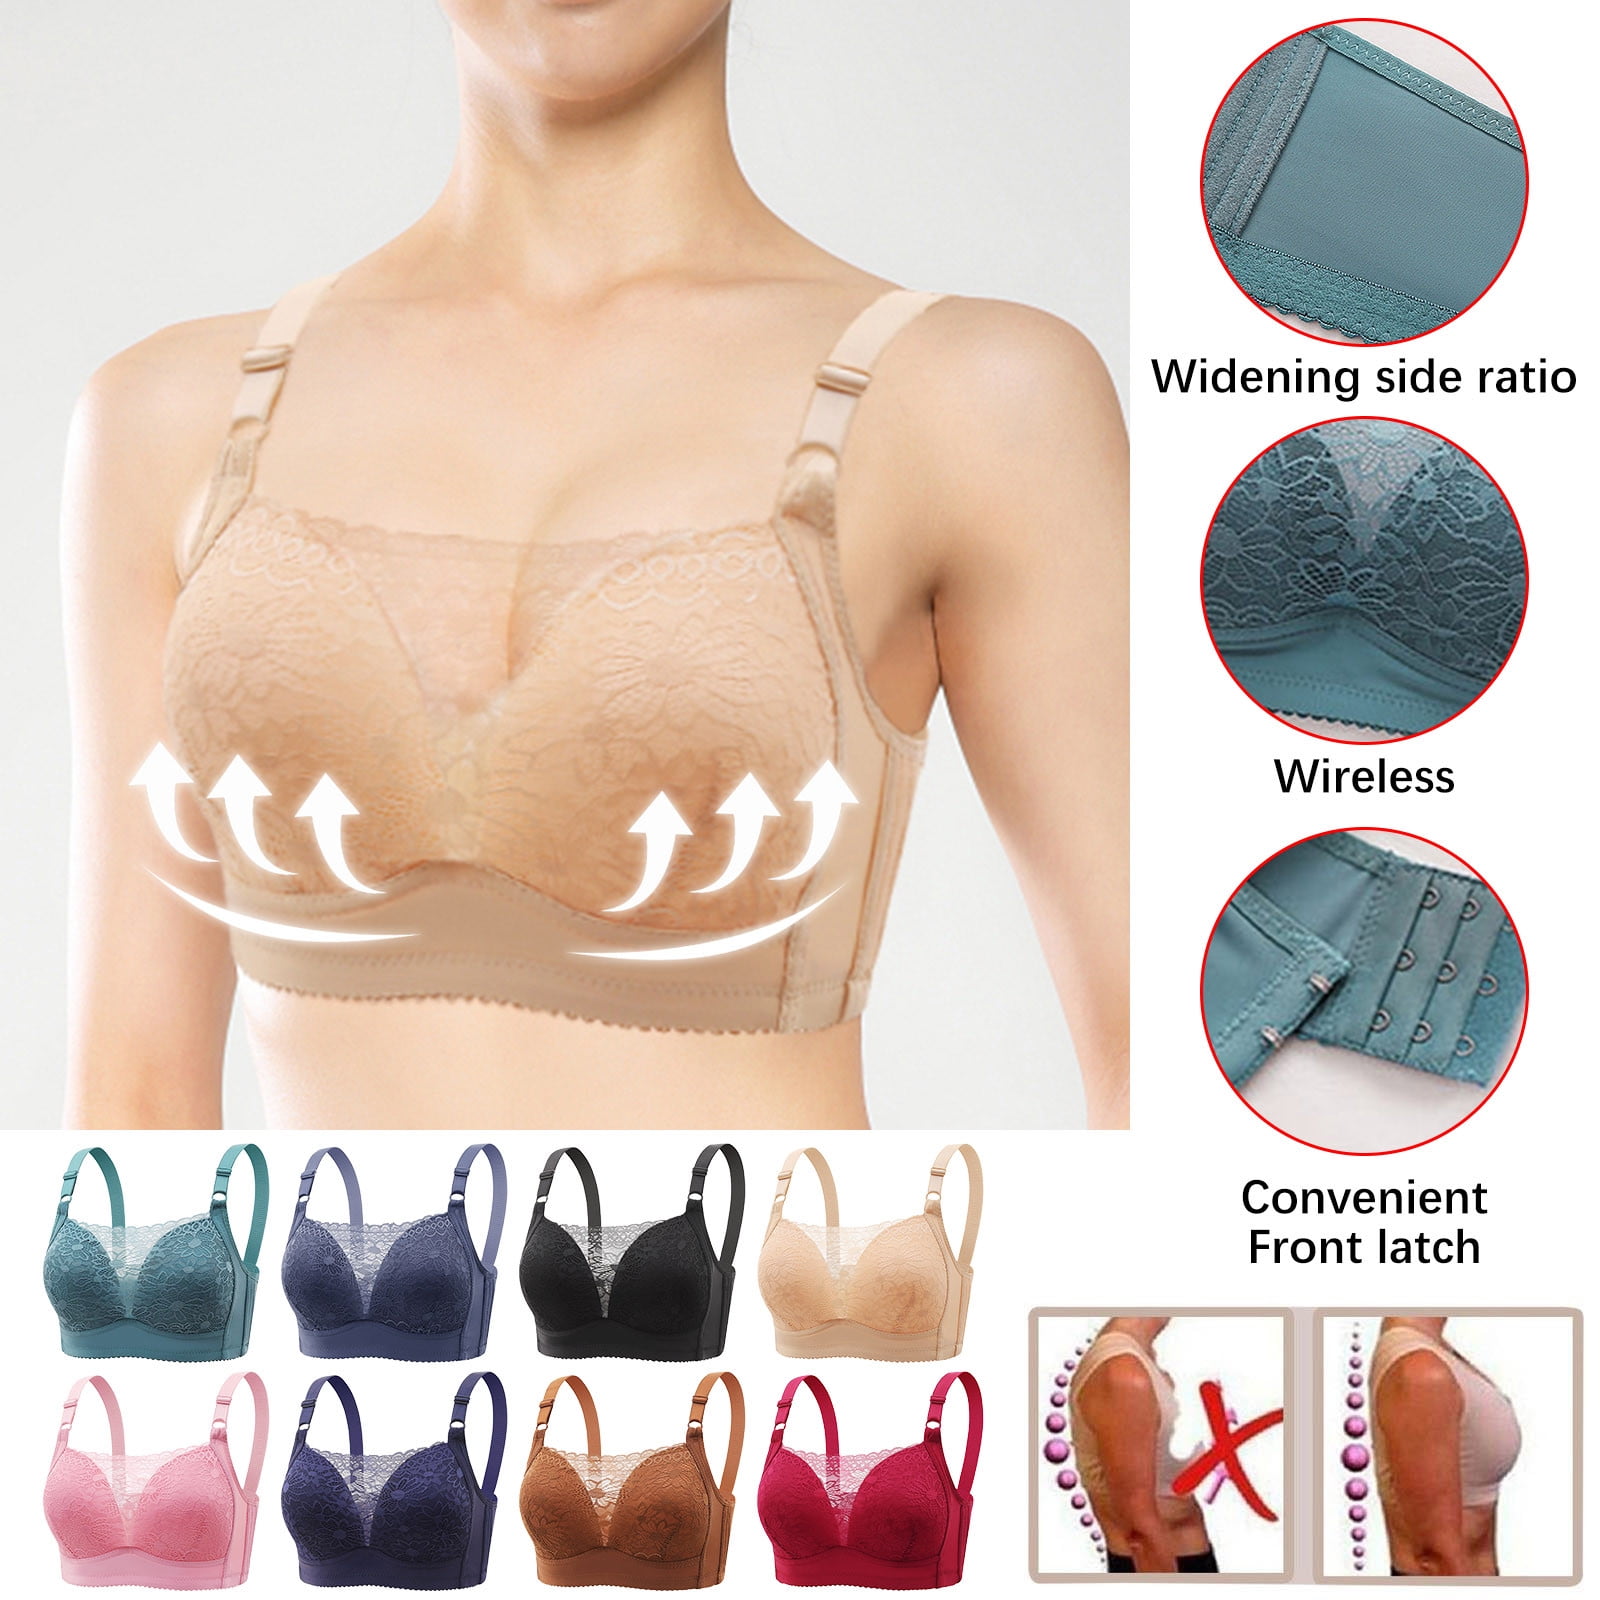 Patlollav Woman Plus Size Clearance Bras Comfortable Breathable Bra Lingerie